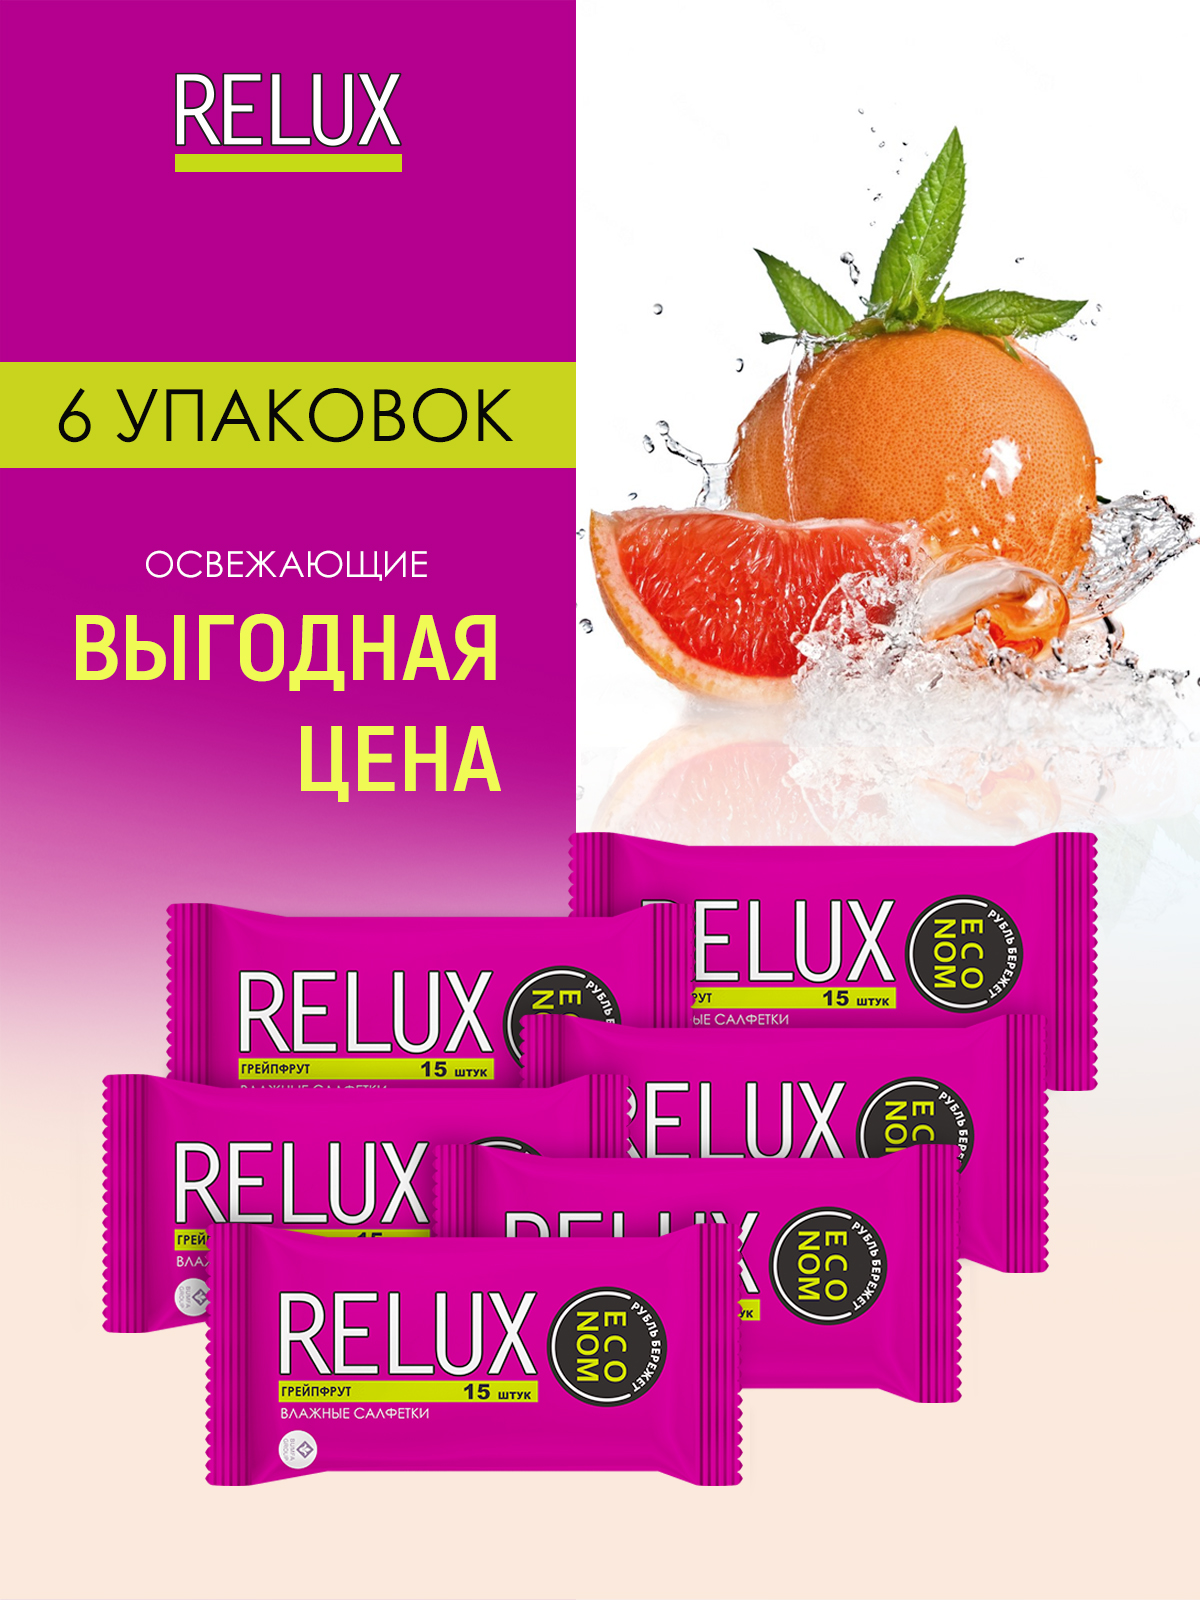 Салфетки влажные Relux освежающие грейпфрут 15шт 6 упаковок салфетки влажные верная цена освежающие универсальные 15 шт